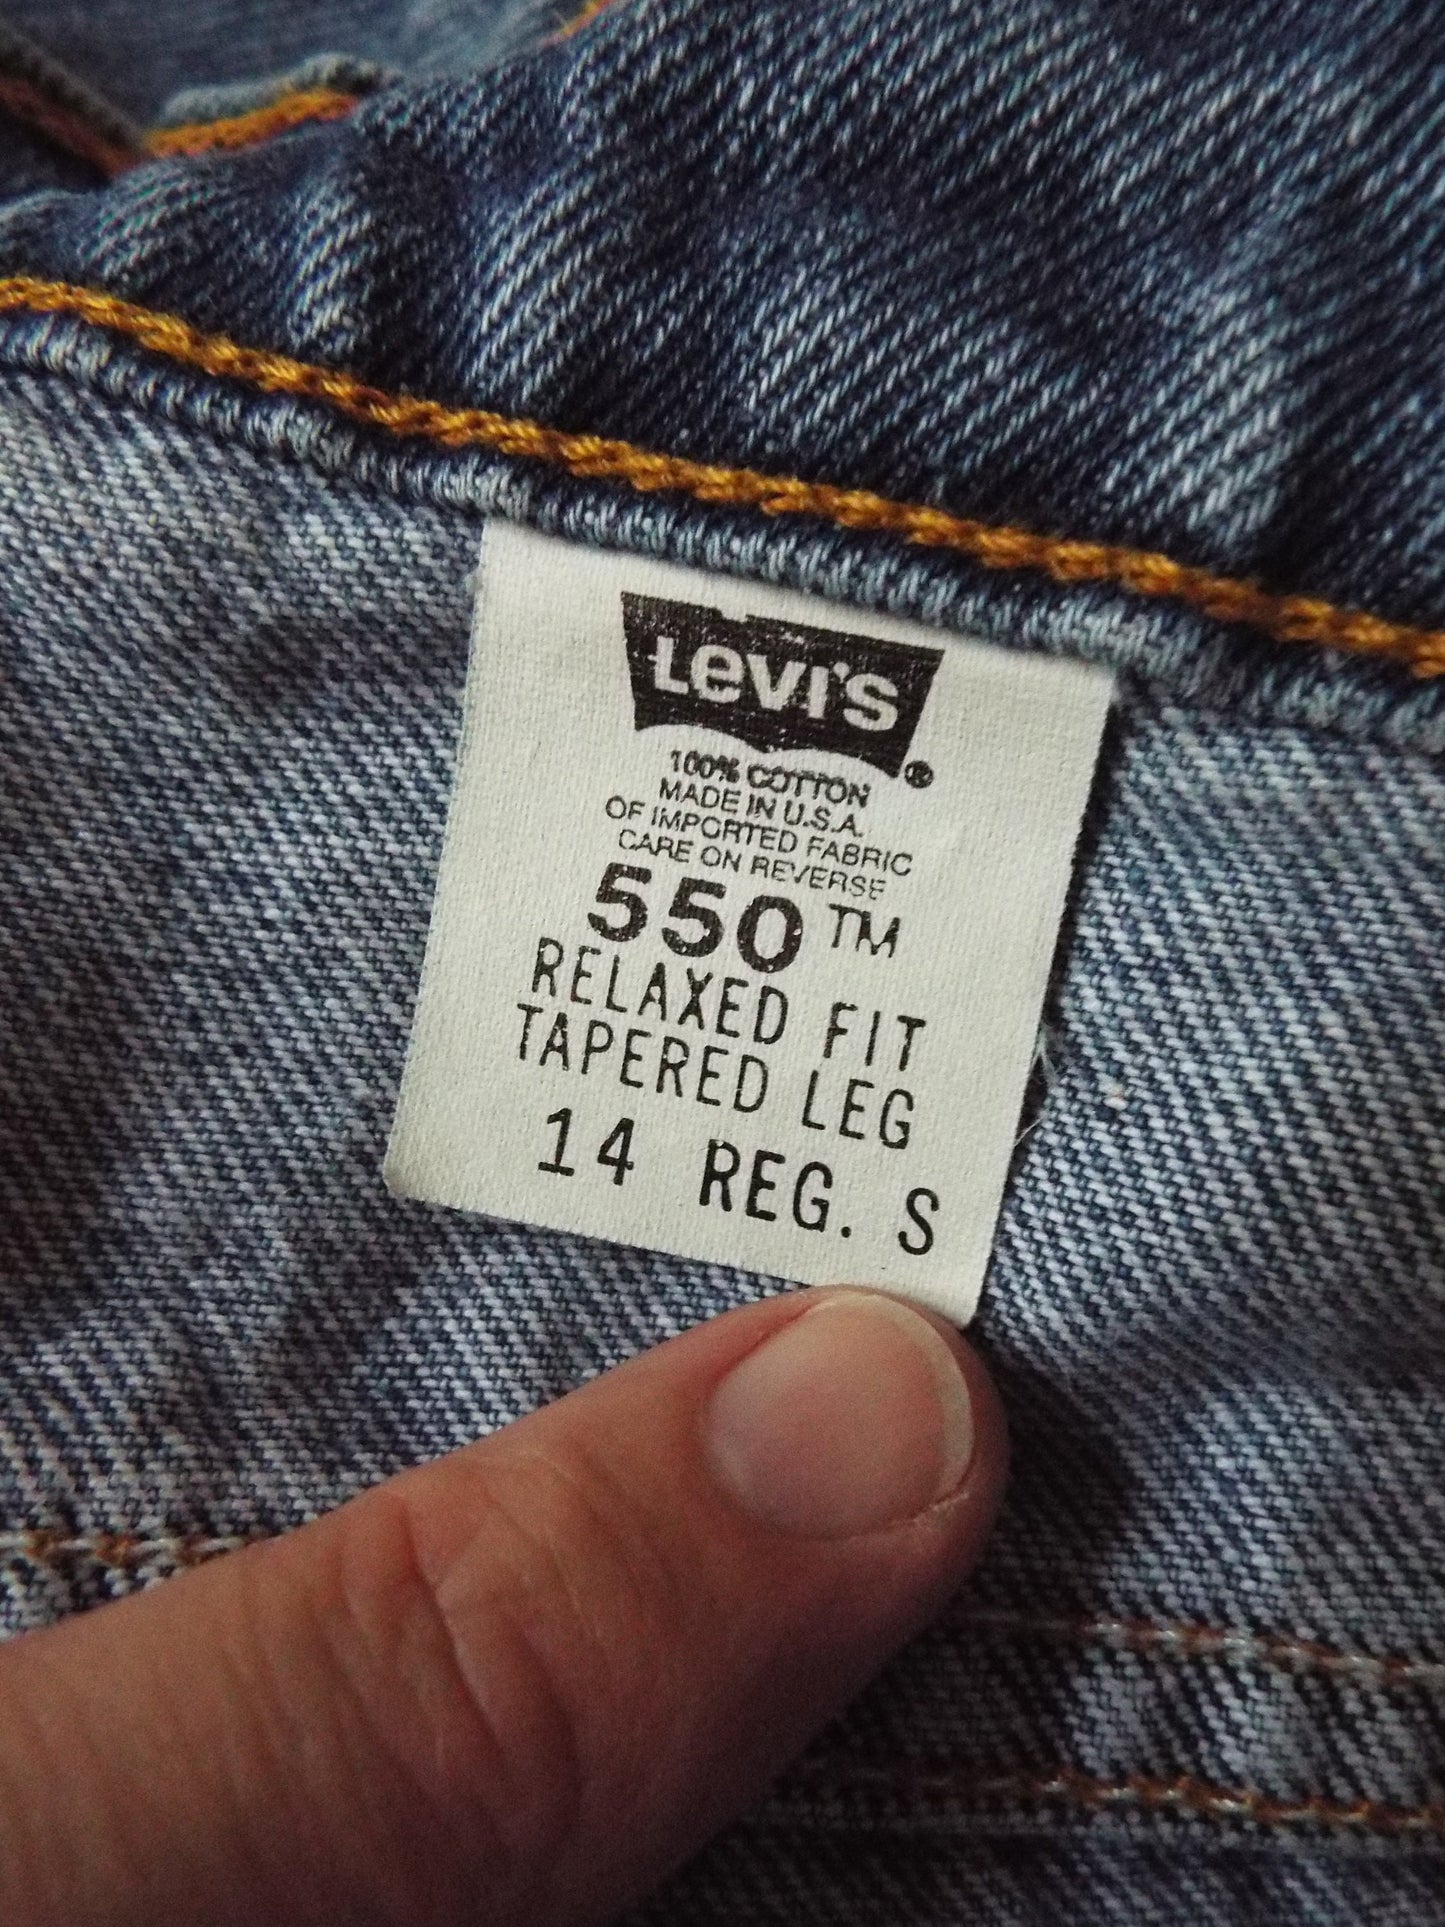 Vintage Denim 550 Jeans by Levi's